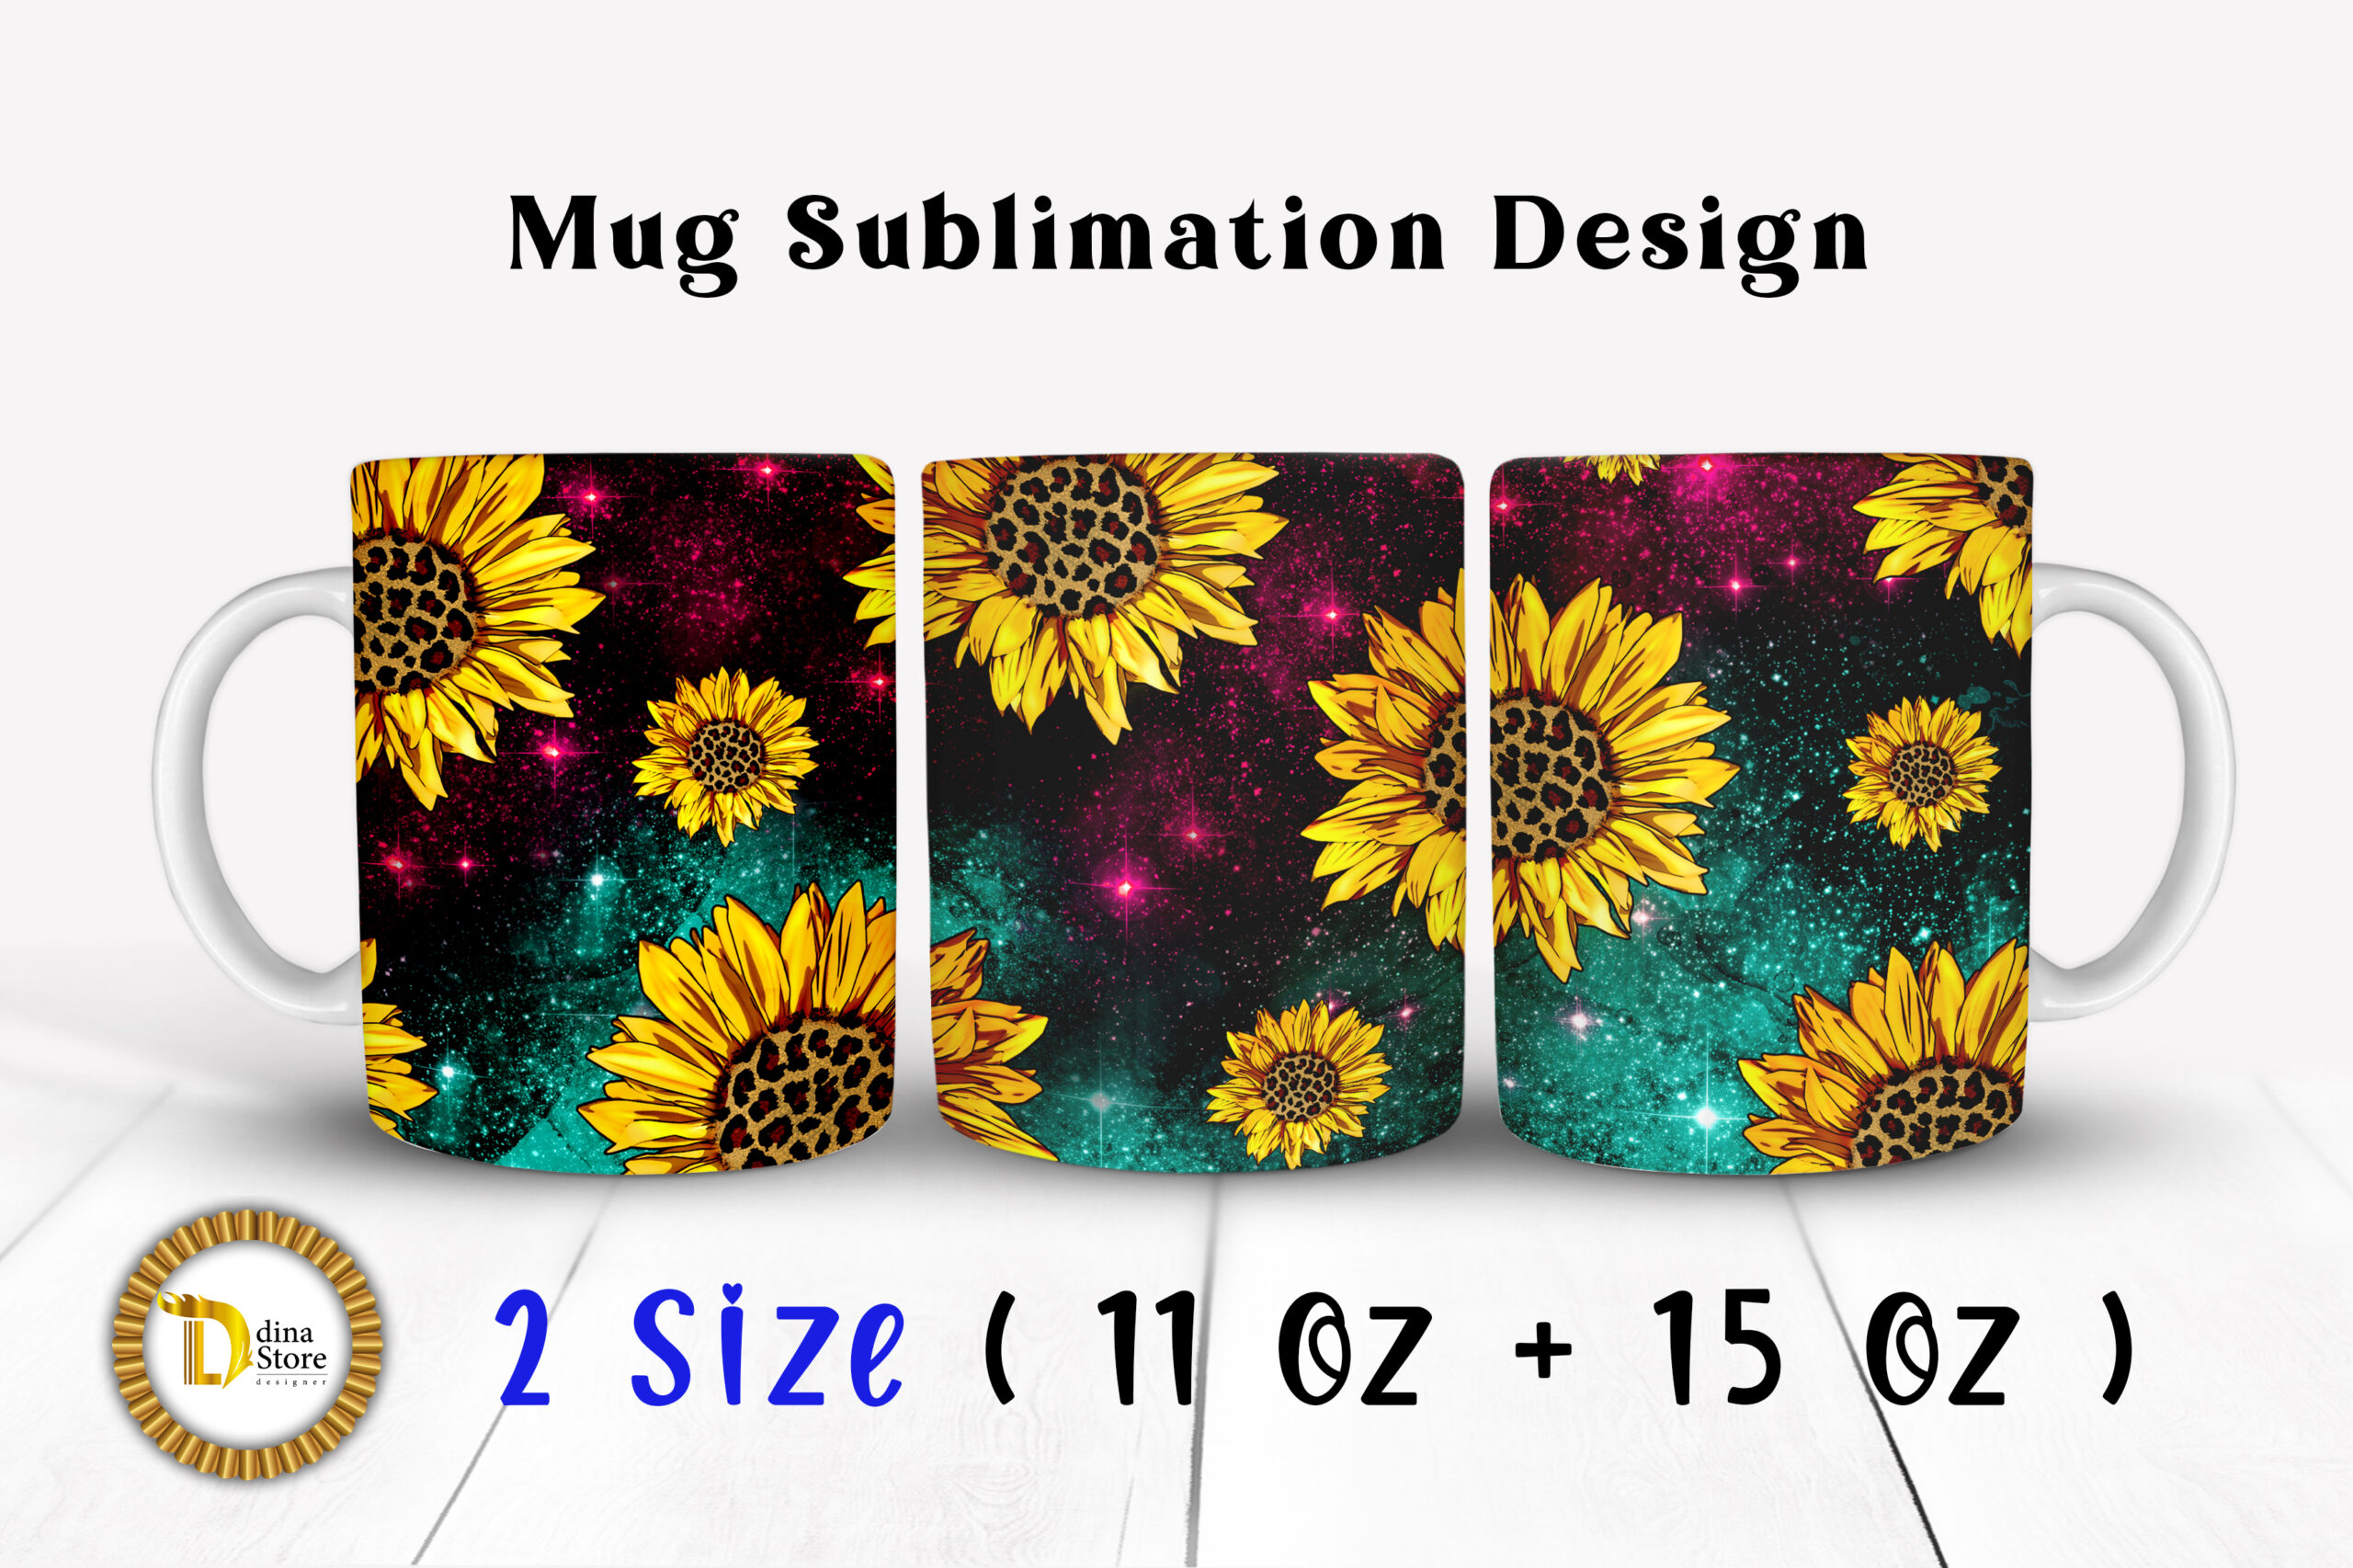 DIGITAL Sublimation Mug Design / Sublimation Mug / Sublimation